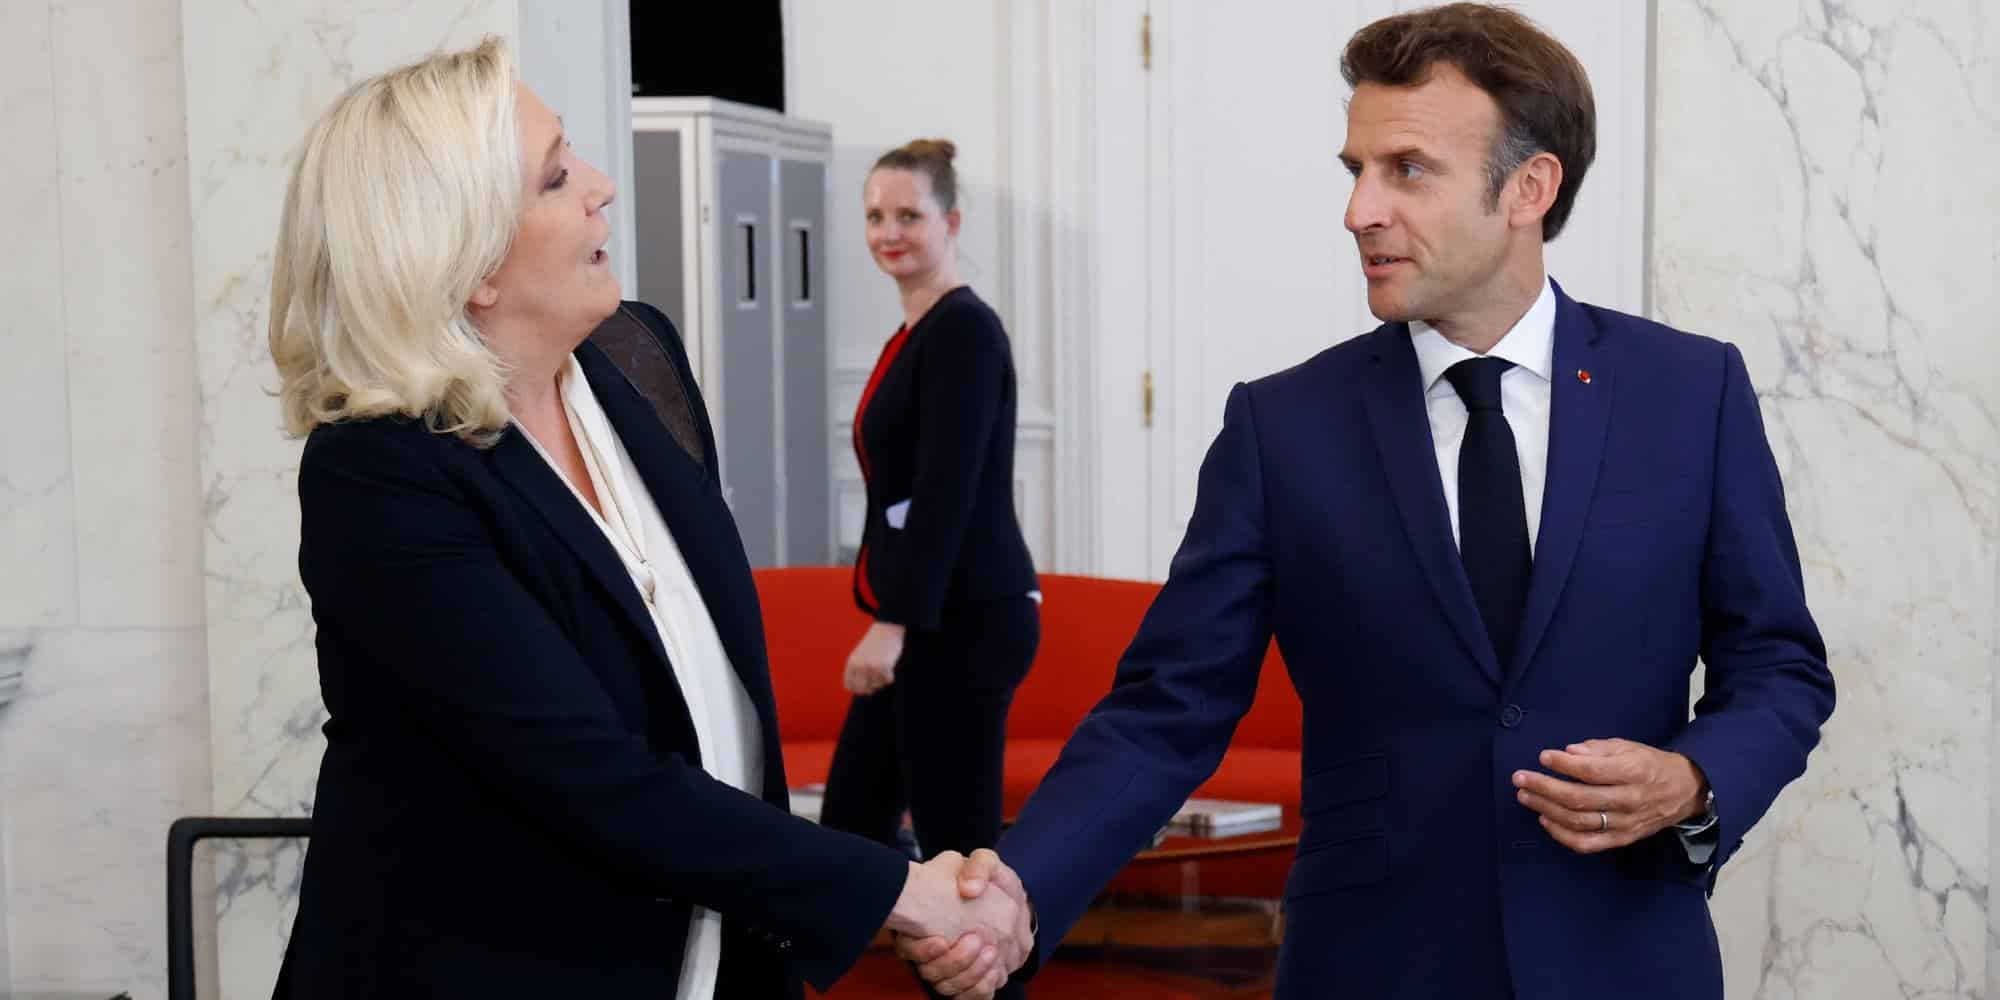 Η επικεφαλής της γαλλικής ακροδεξιάς Μαρίν Λεπέν κάνει χειραψία με τον πρόεδρο της Γαλλίας Εμανουέλ Μακρόν μετά από συνομιλίες στο προεδρικό Μέγαρο των Ηλυσίων